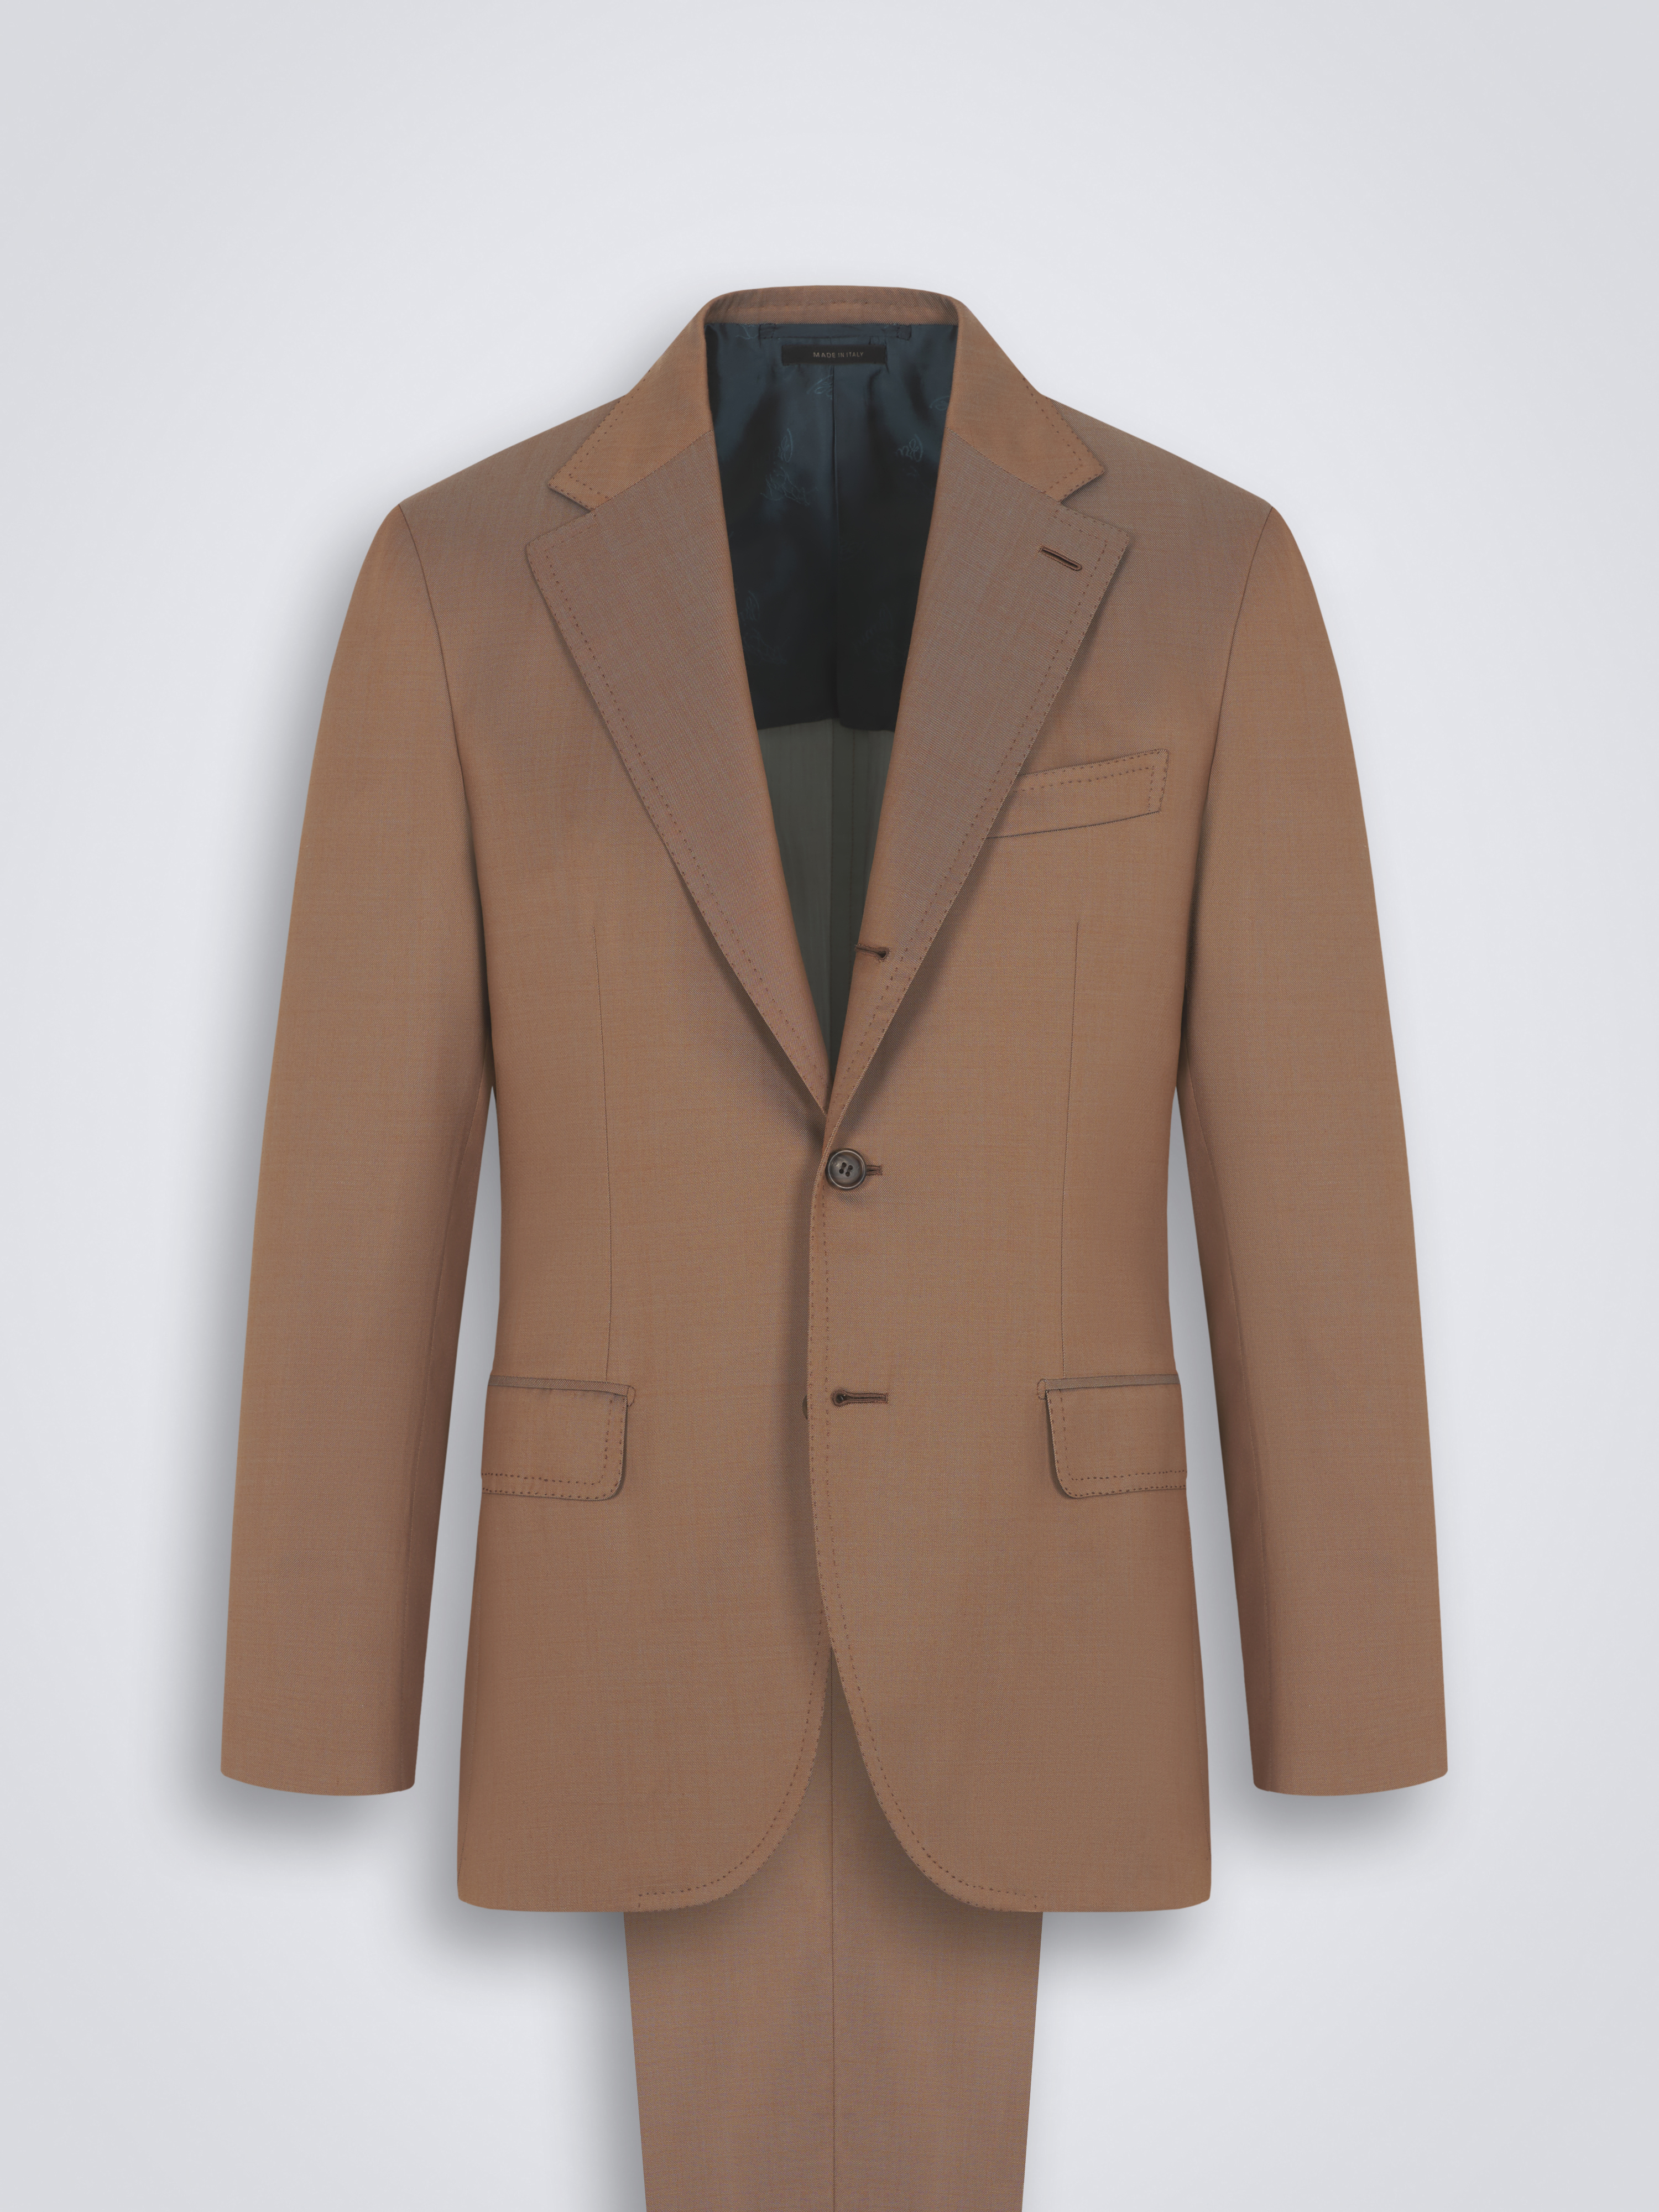 Suits | Brioni® US Official Store